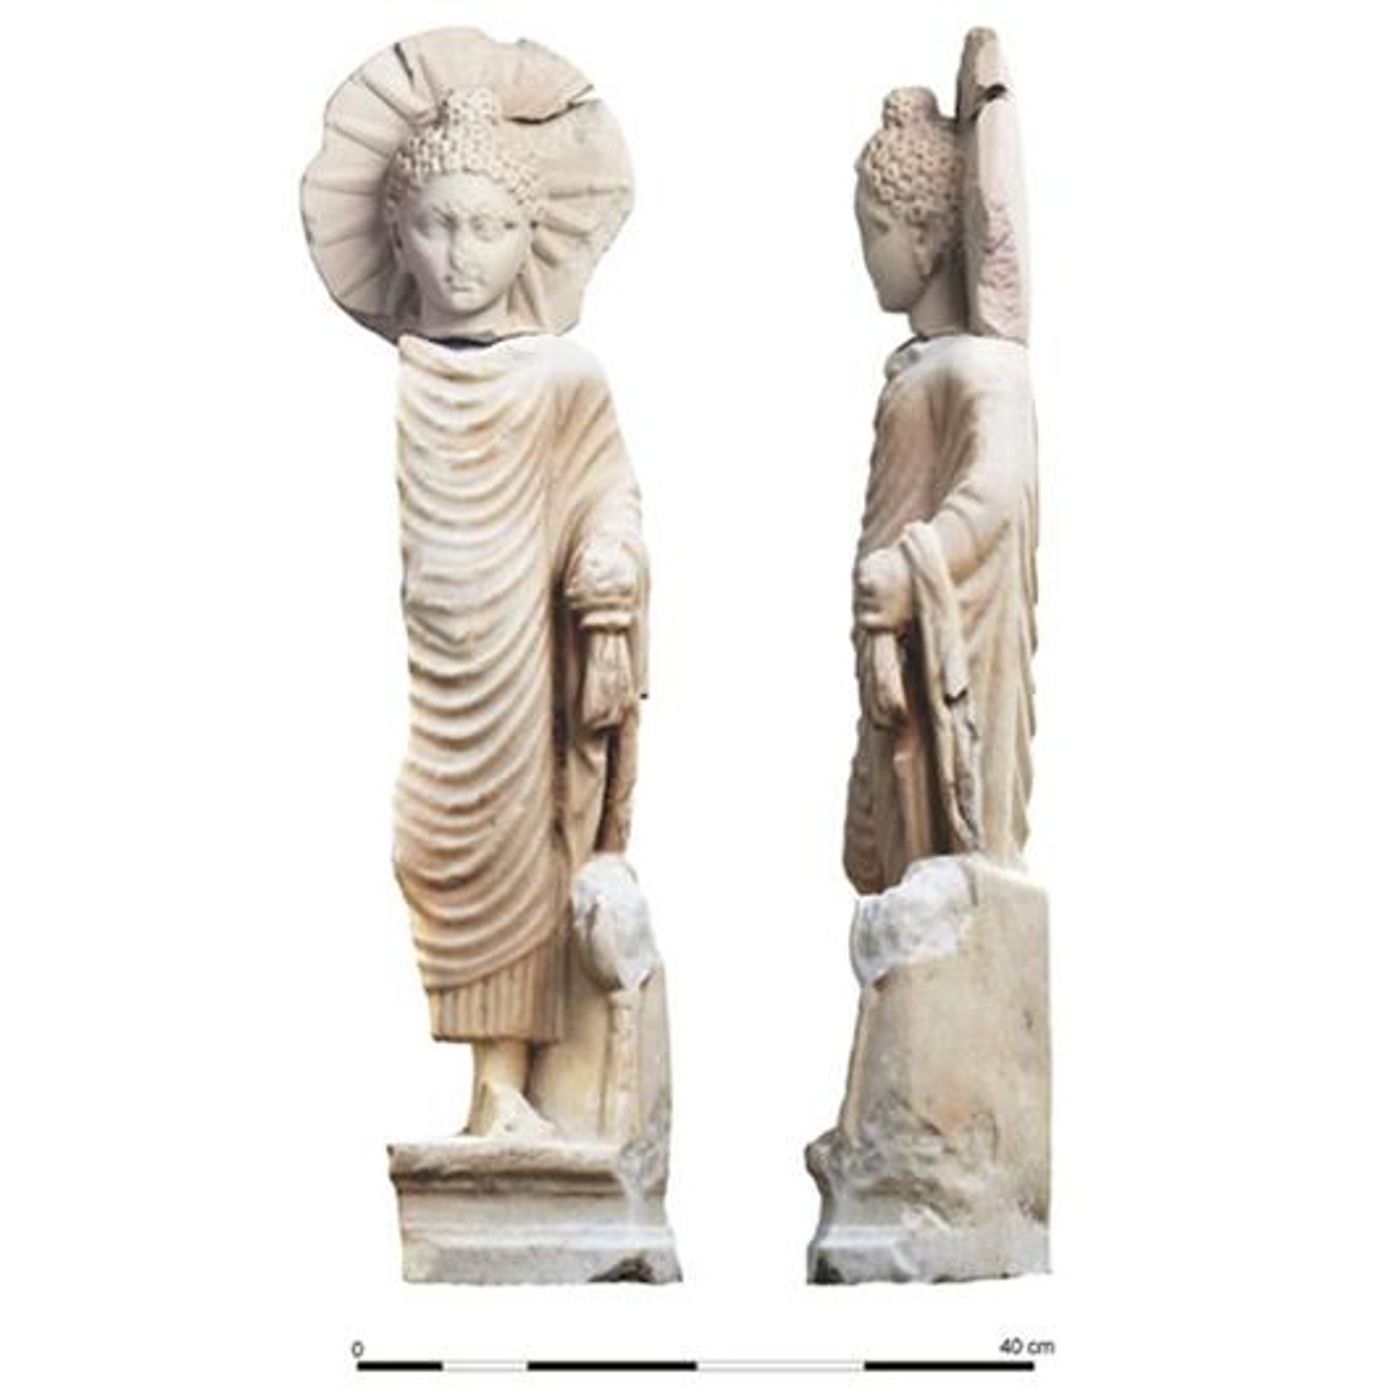 Statua di Buddha rinvenuta in un tempio nella regione egiziana del Mar Rosso